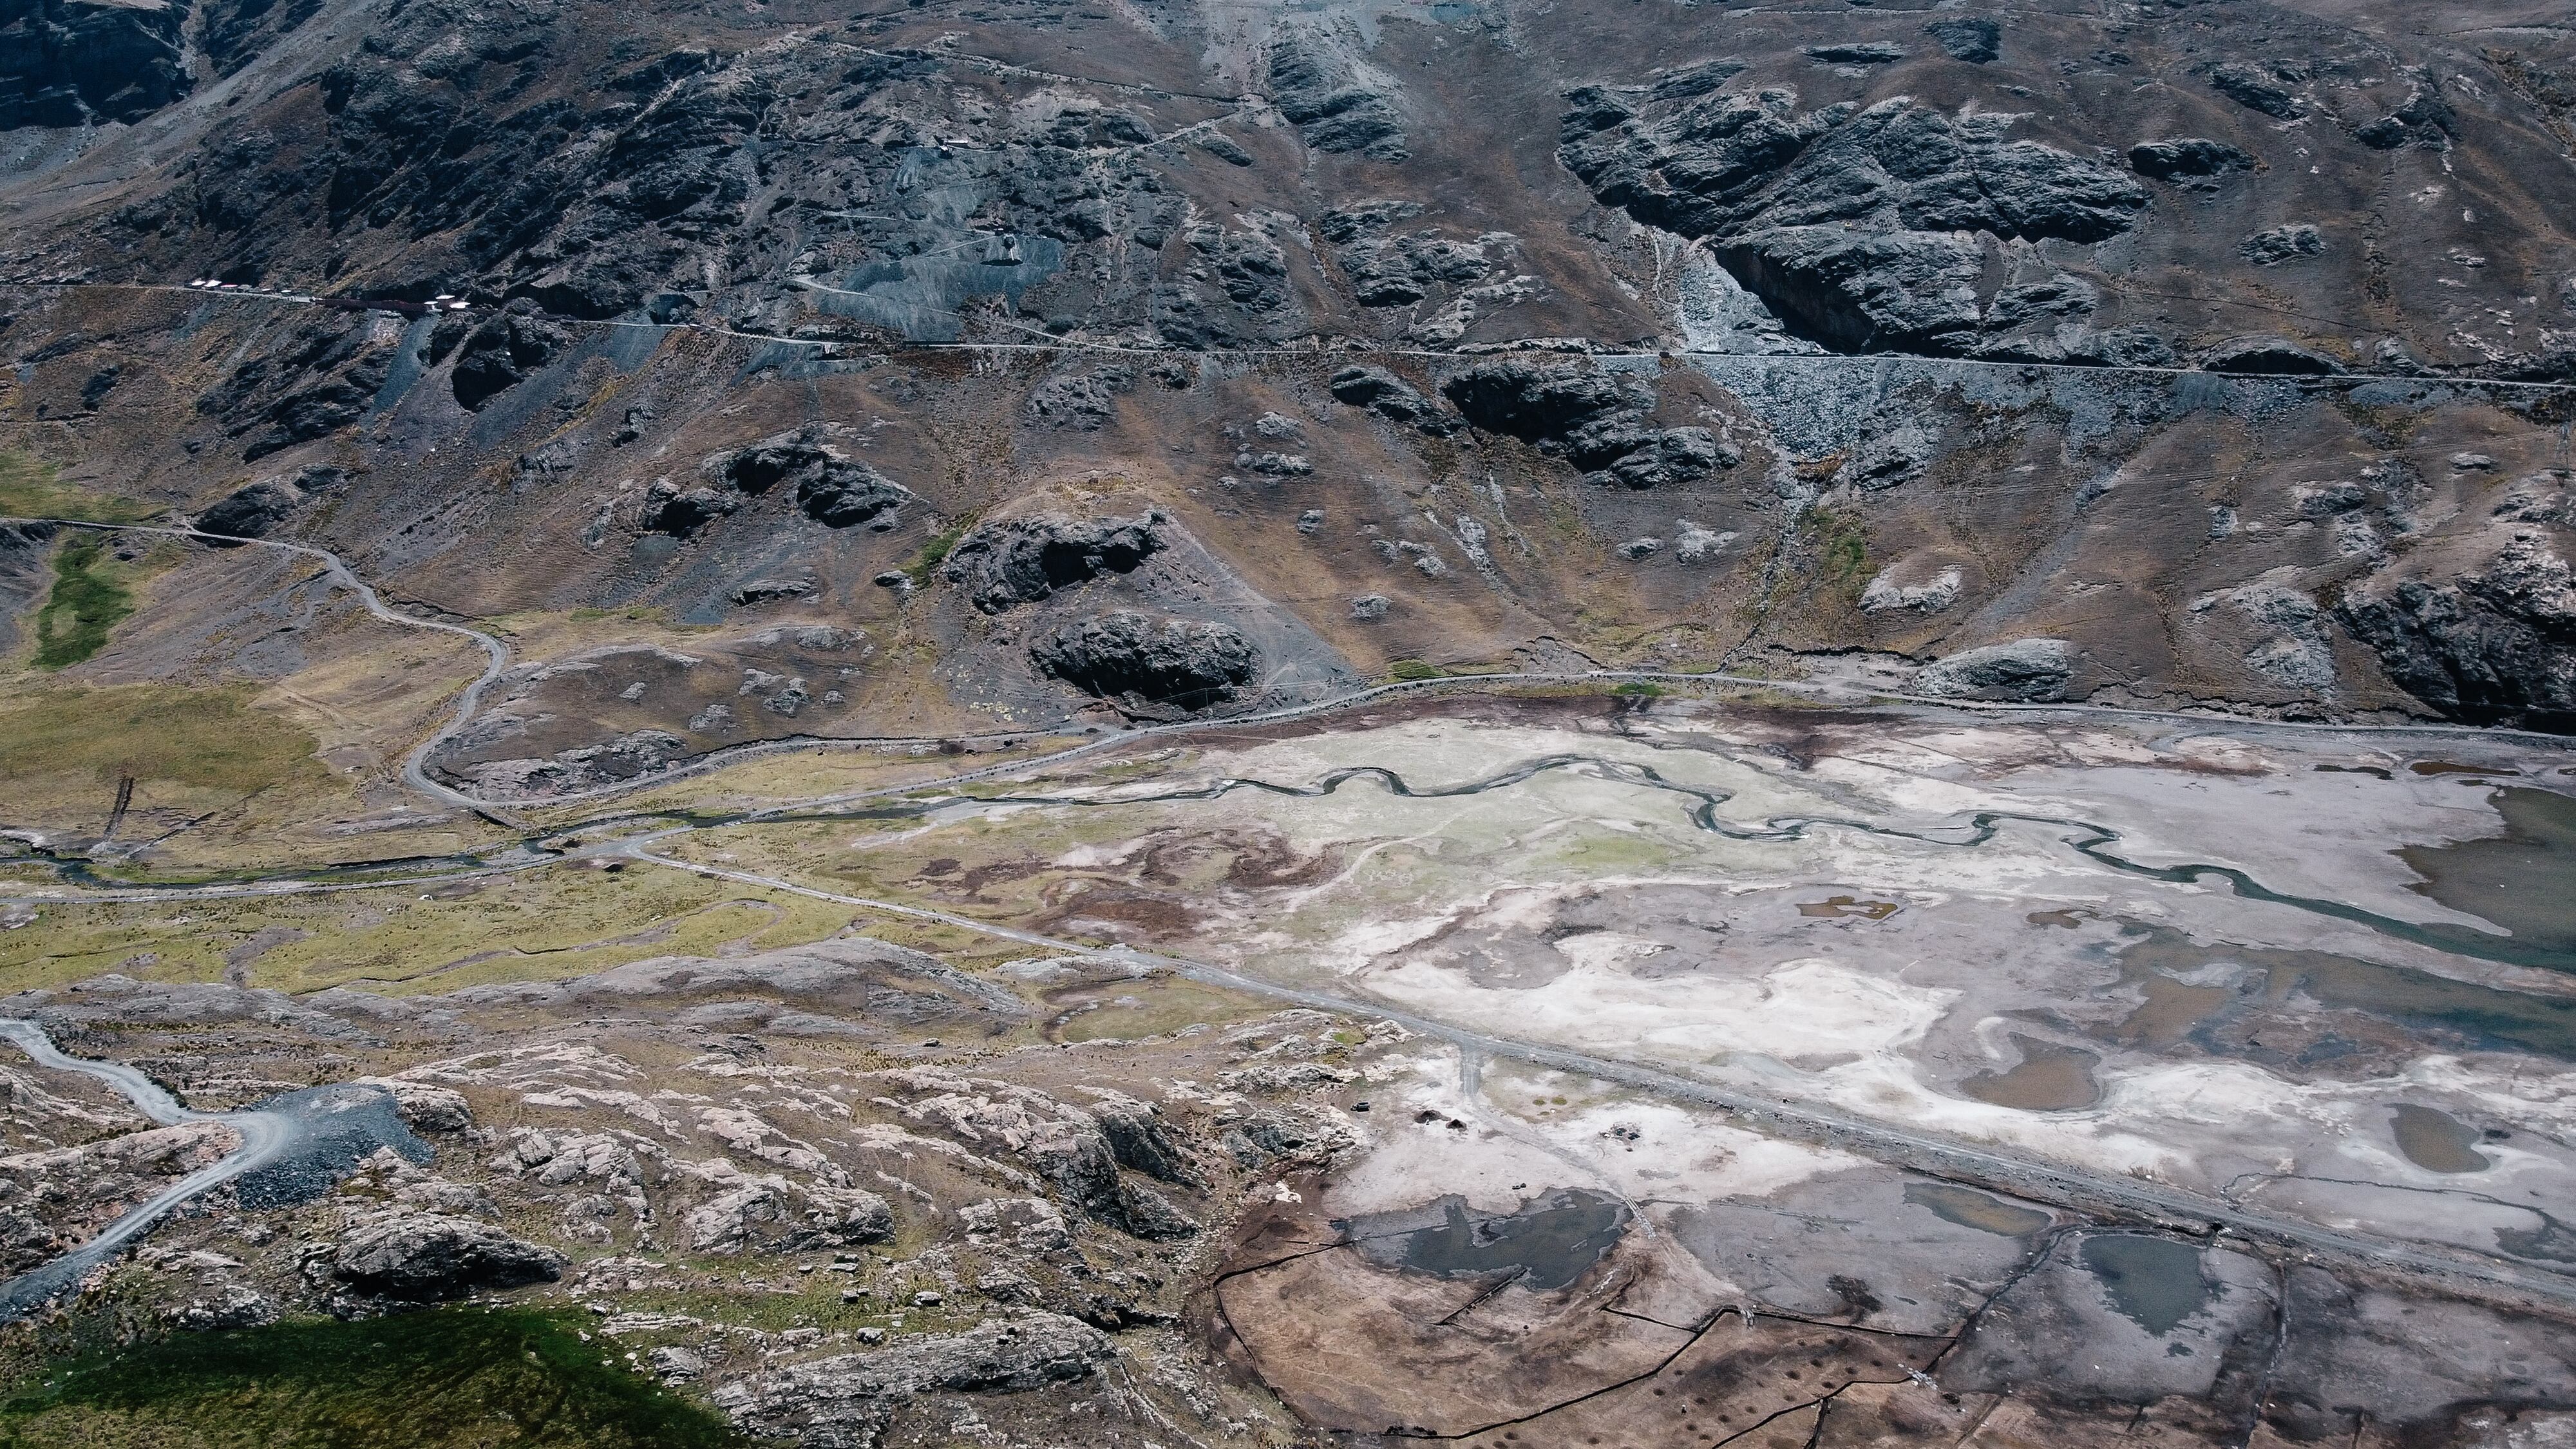 La represa de Incachaca, que se encuentra al 40% de su capacidad y abastece a parte de La Paz, se ha visto muy afectada por la sequía. Al fondo, en la ladera, un campamento minero.